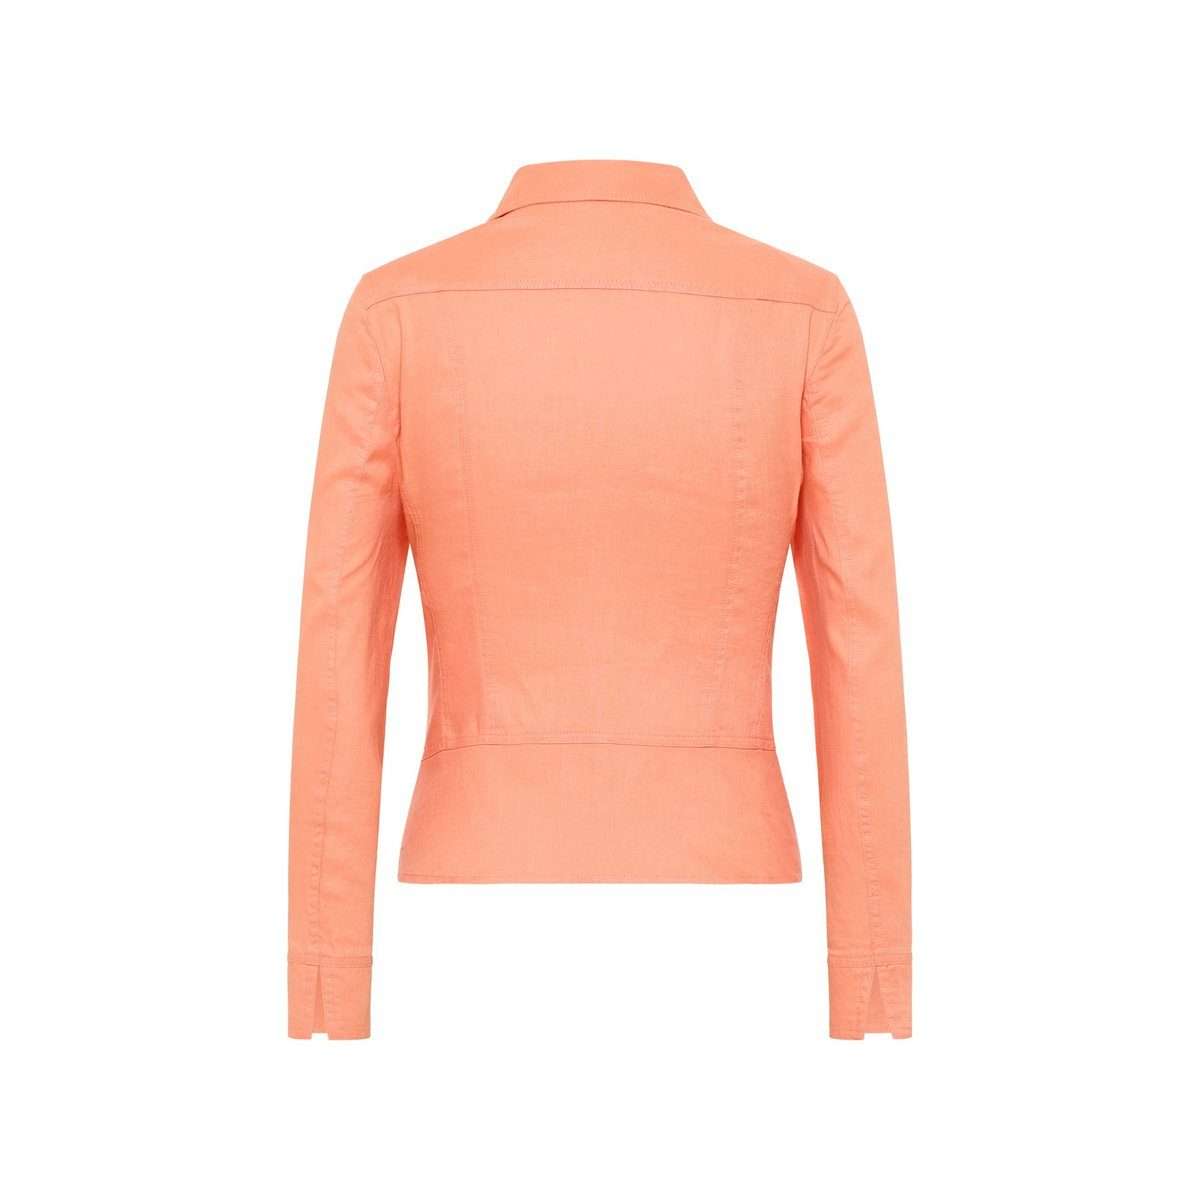 Функциональная куртка 3-в-1 абрикосового цвета (1 шт.)